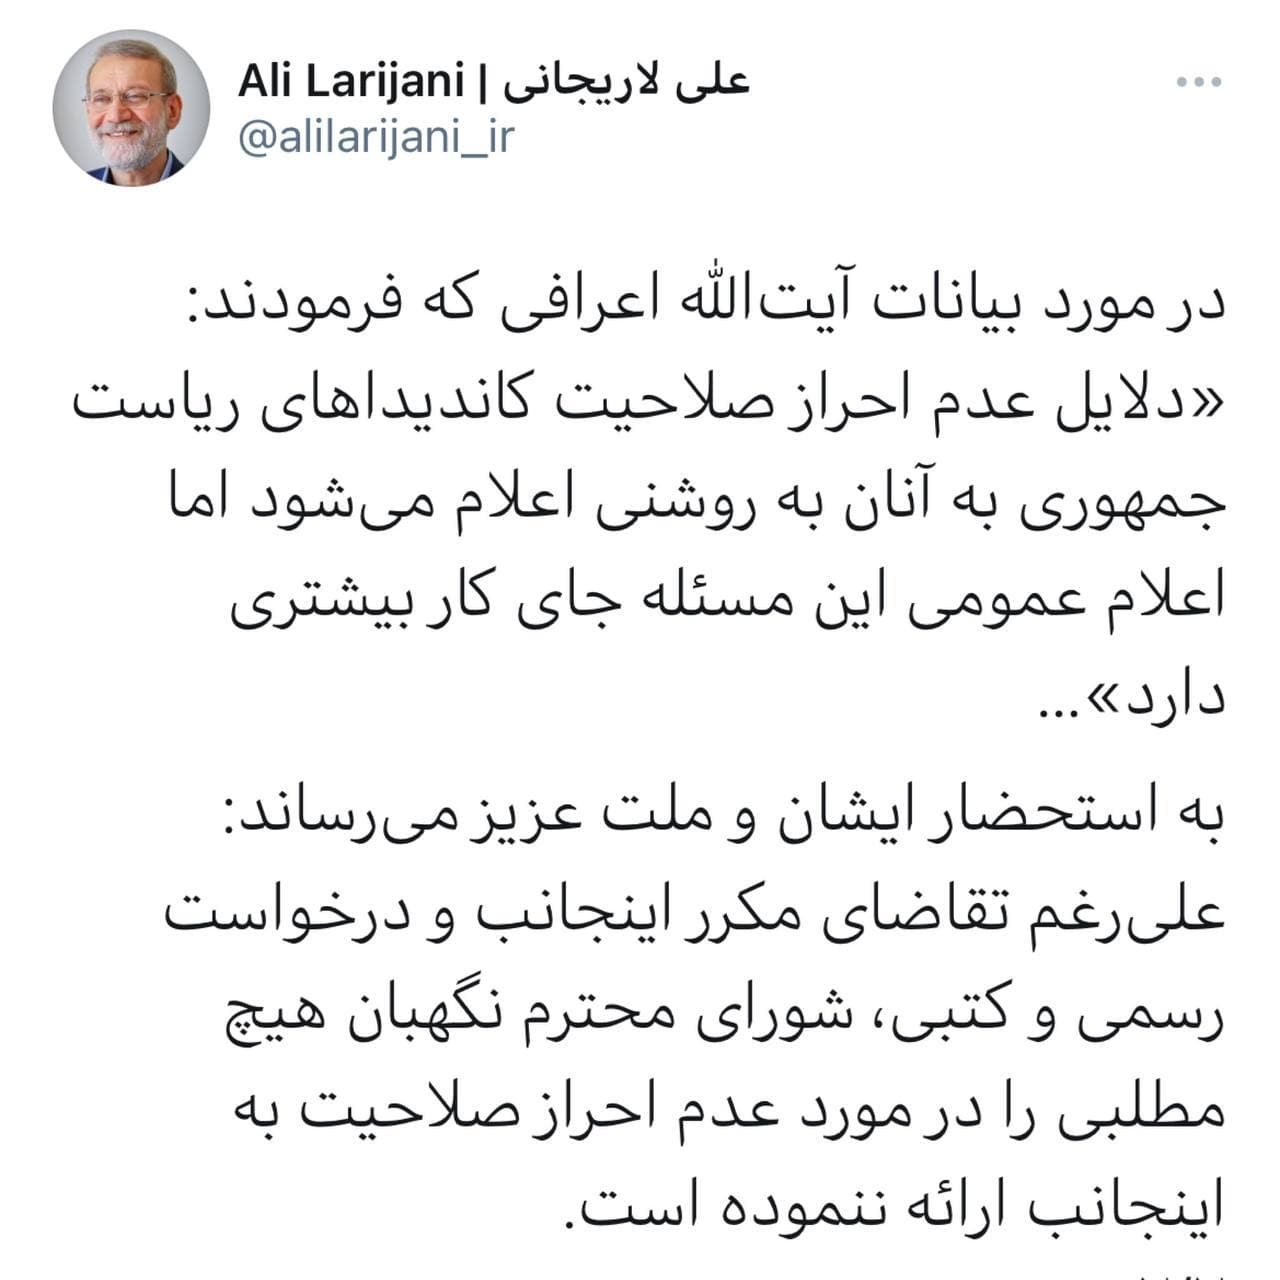 لاریجانی در واکنش به سخنان اعرافی: علی رغم تقاضای مکرر عدم احراز صلاحیت اعلام نشده است